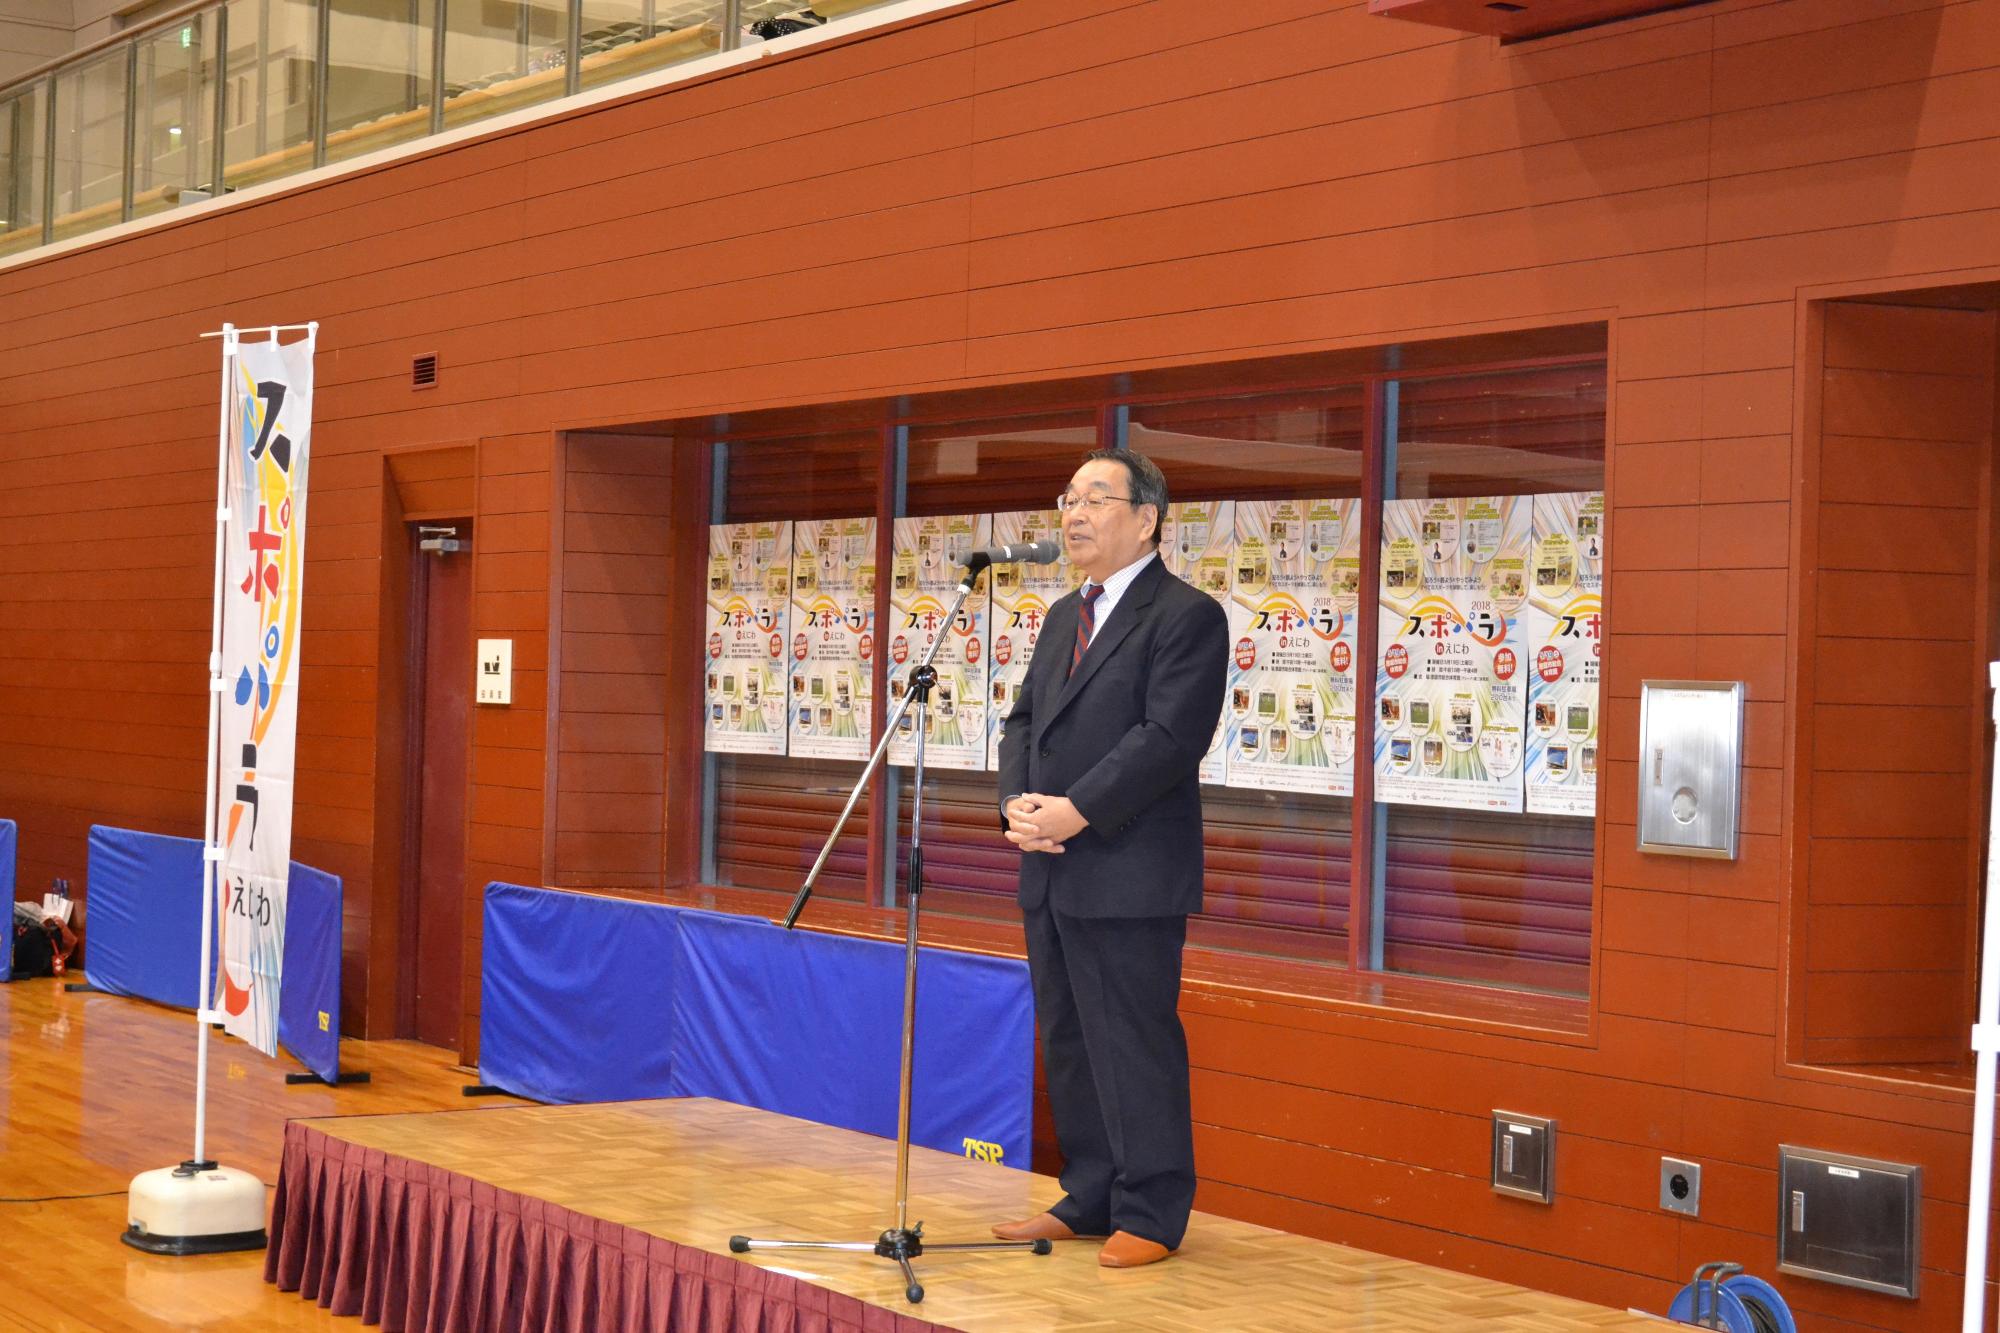 「スポパラinえにわ」にて挨拶をしている原田市長の写真